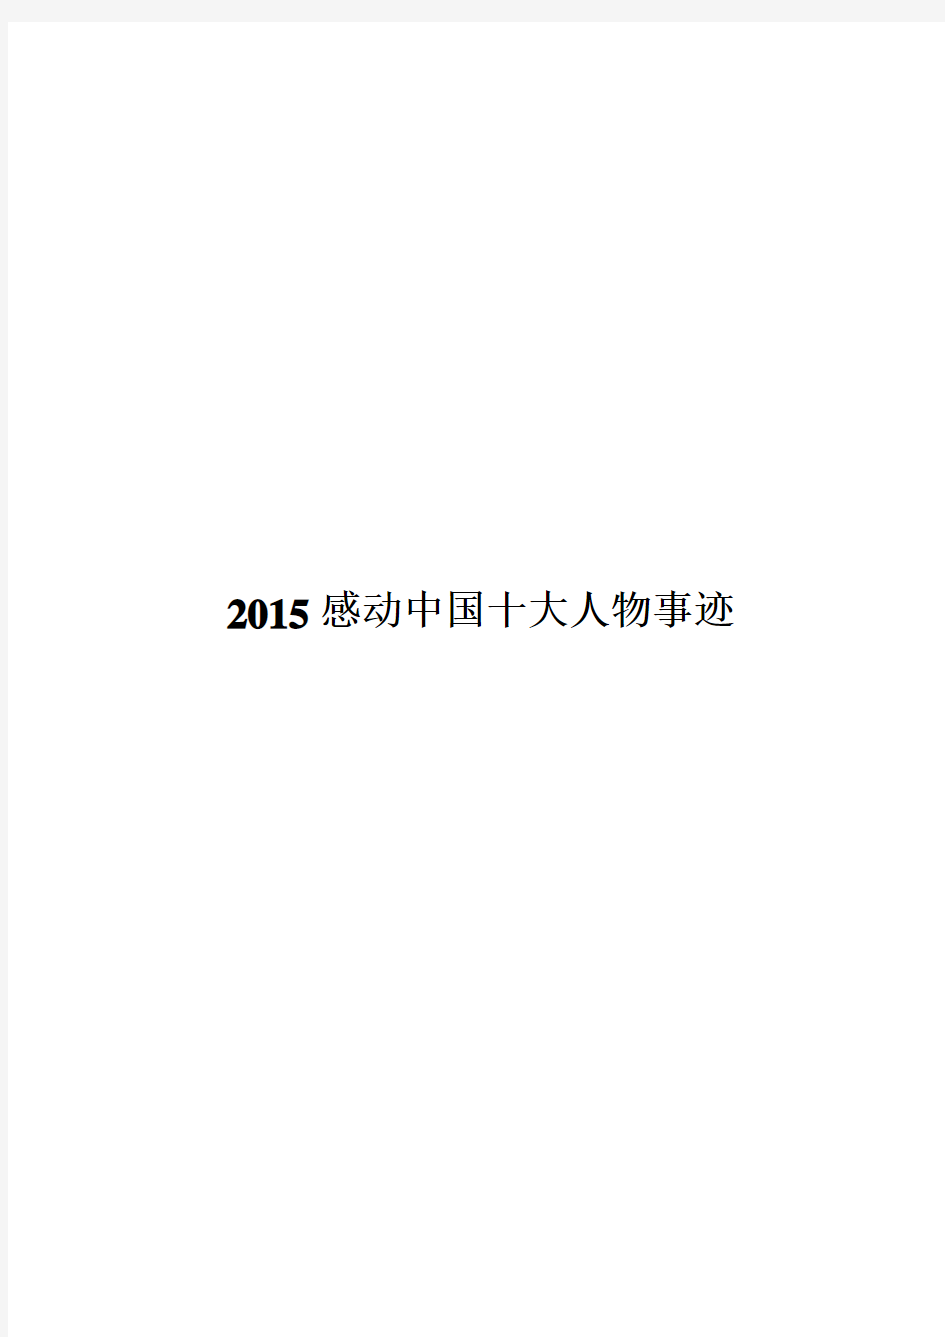 2015年感动中国十大人物事迹及颁奖词 (最全的,最牛的)